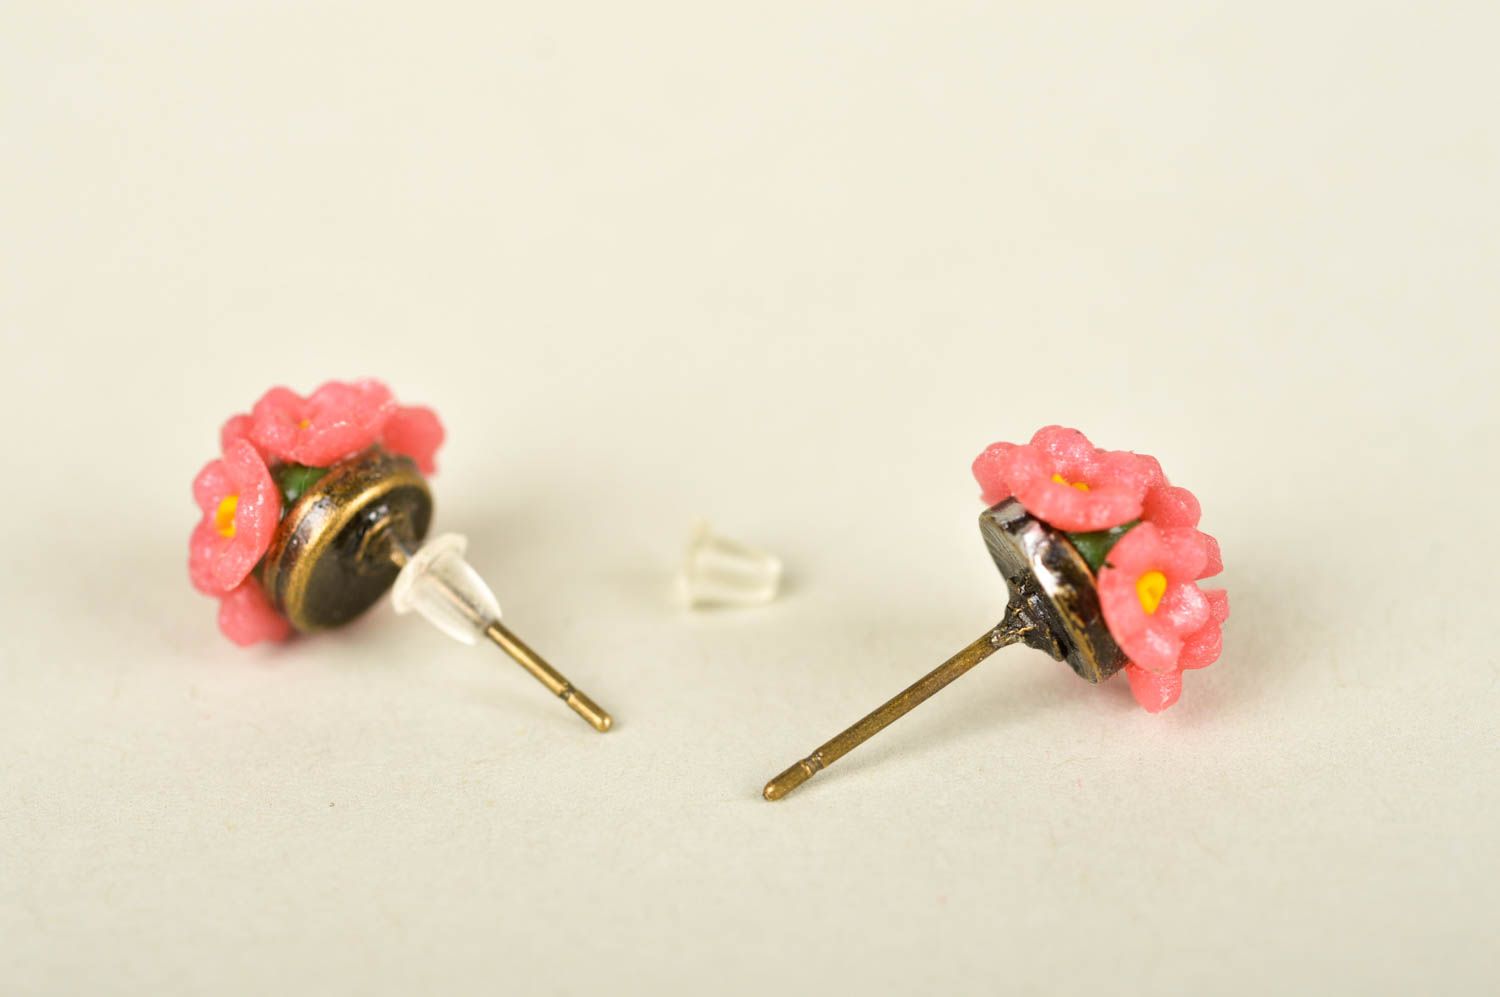 Handmade womens plastic earrings flower stud earrings artisan jewelry gift ideas photo 3